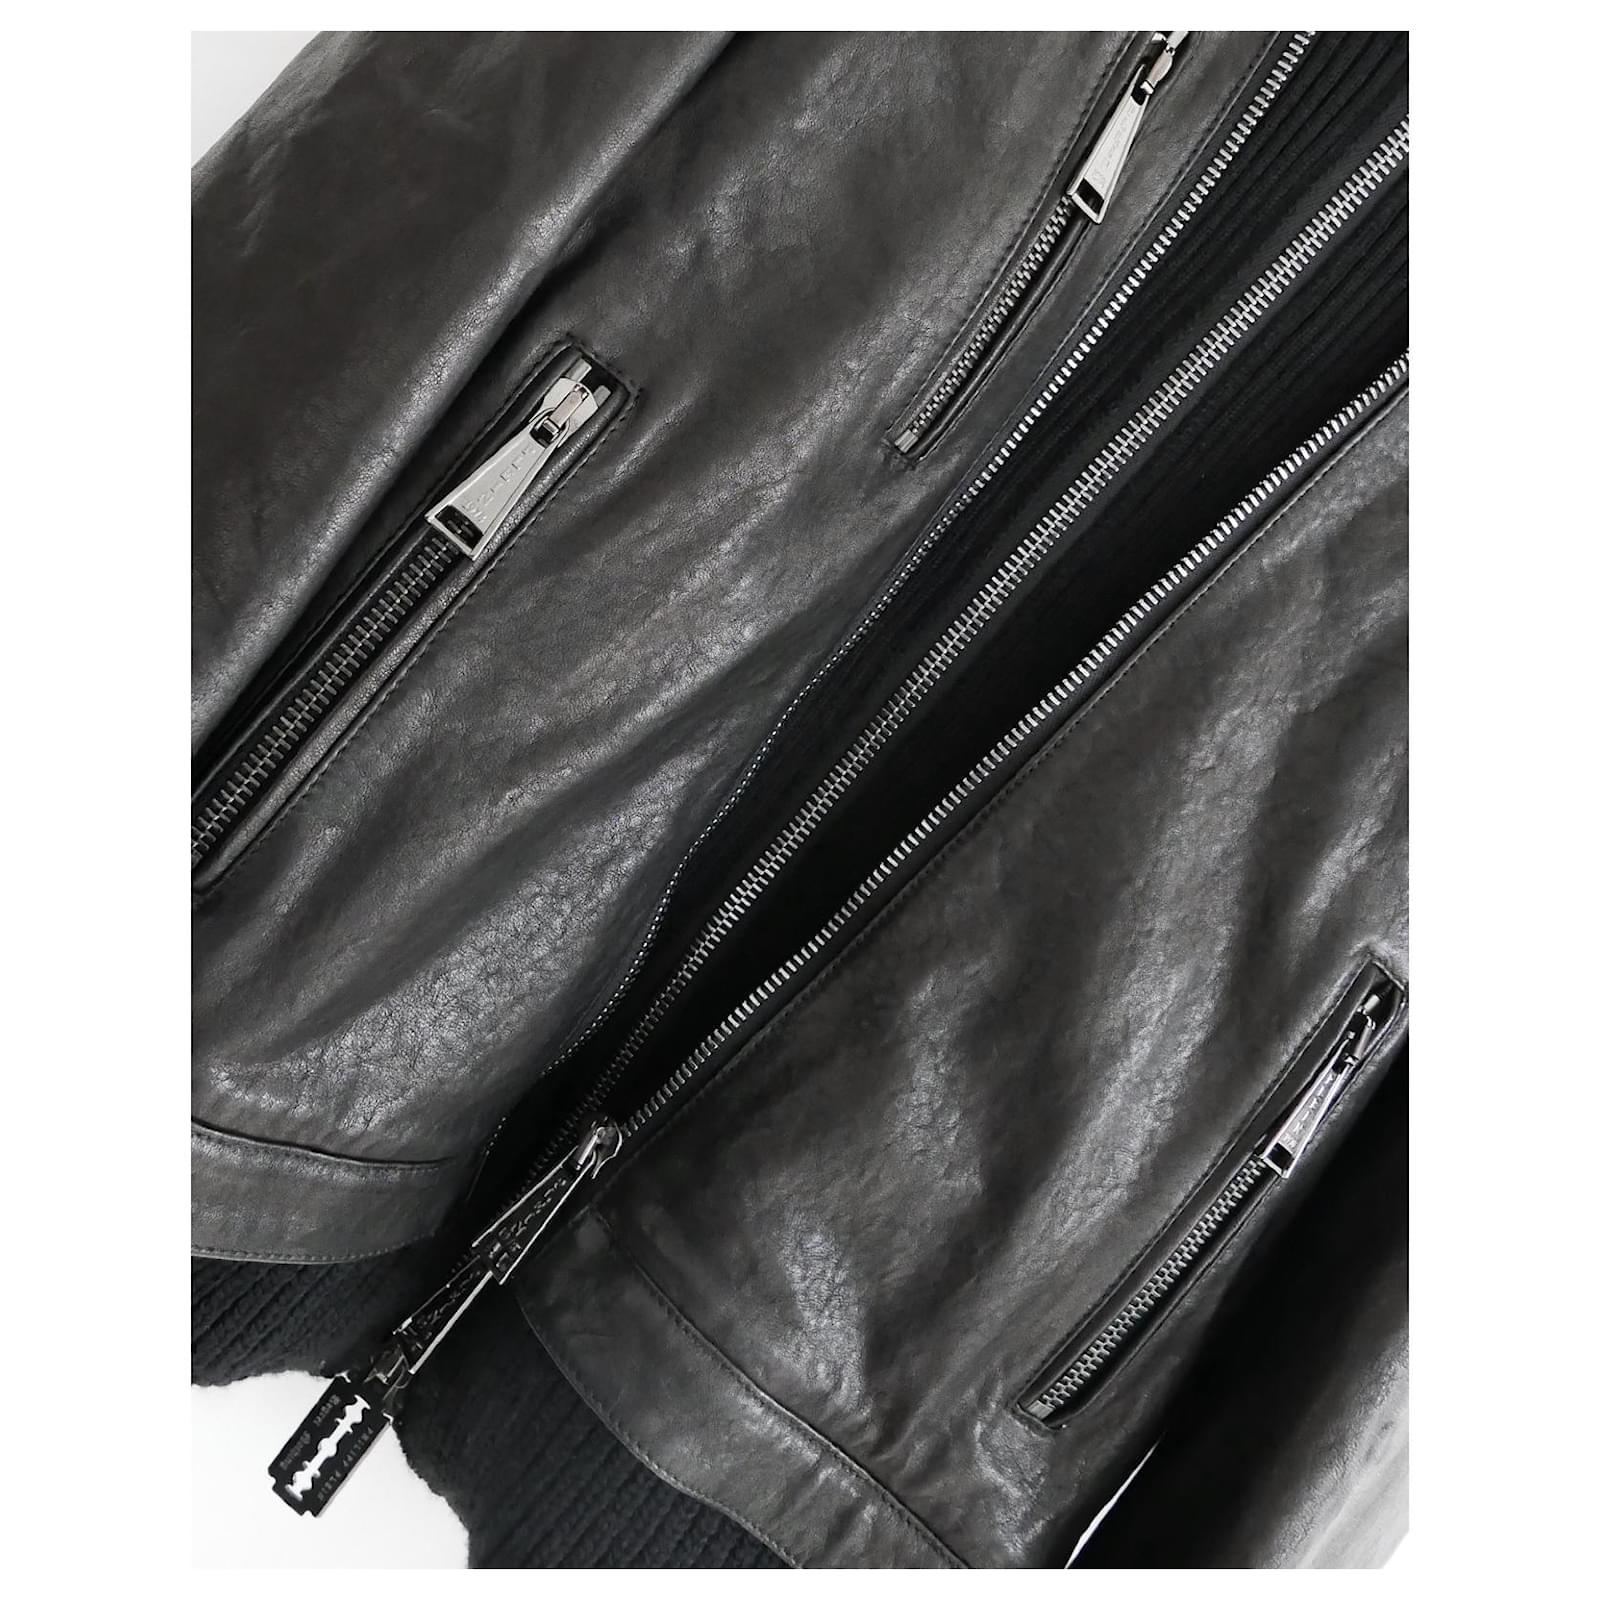 Veste en cuir superposée la plus cool de Philipp Plein, achetée pour 4300 £ et portée quelques fois. 

Superbement confectionné en cuir noir souple avec un empiècement en laine épais. Il est orné d'une tête de mort en 3D sur la poitrine et de